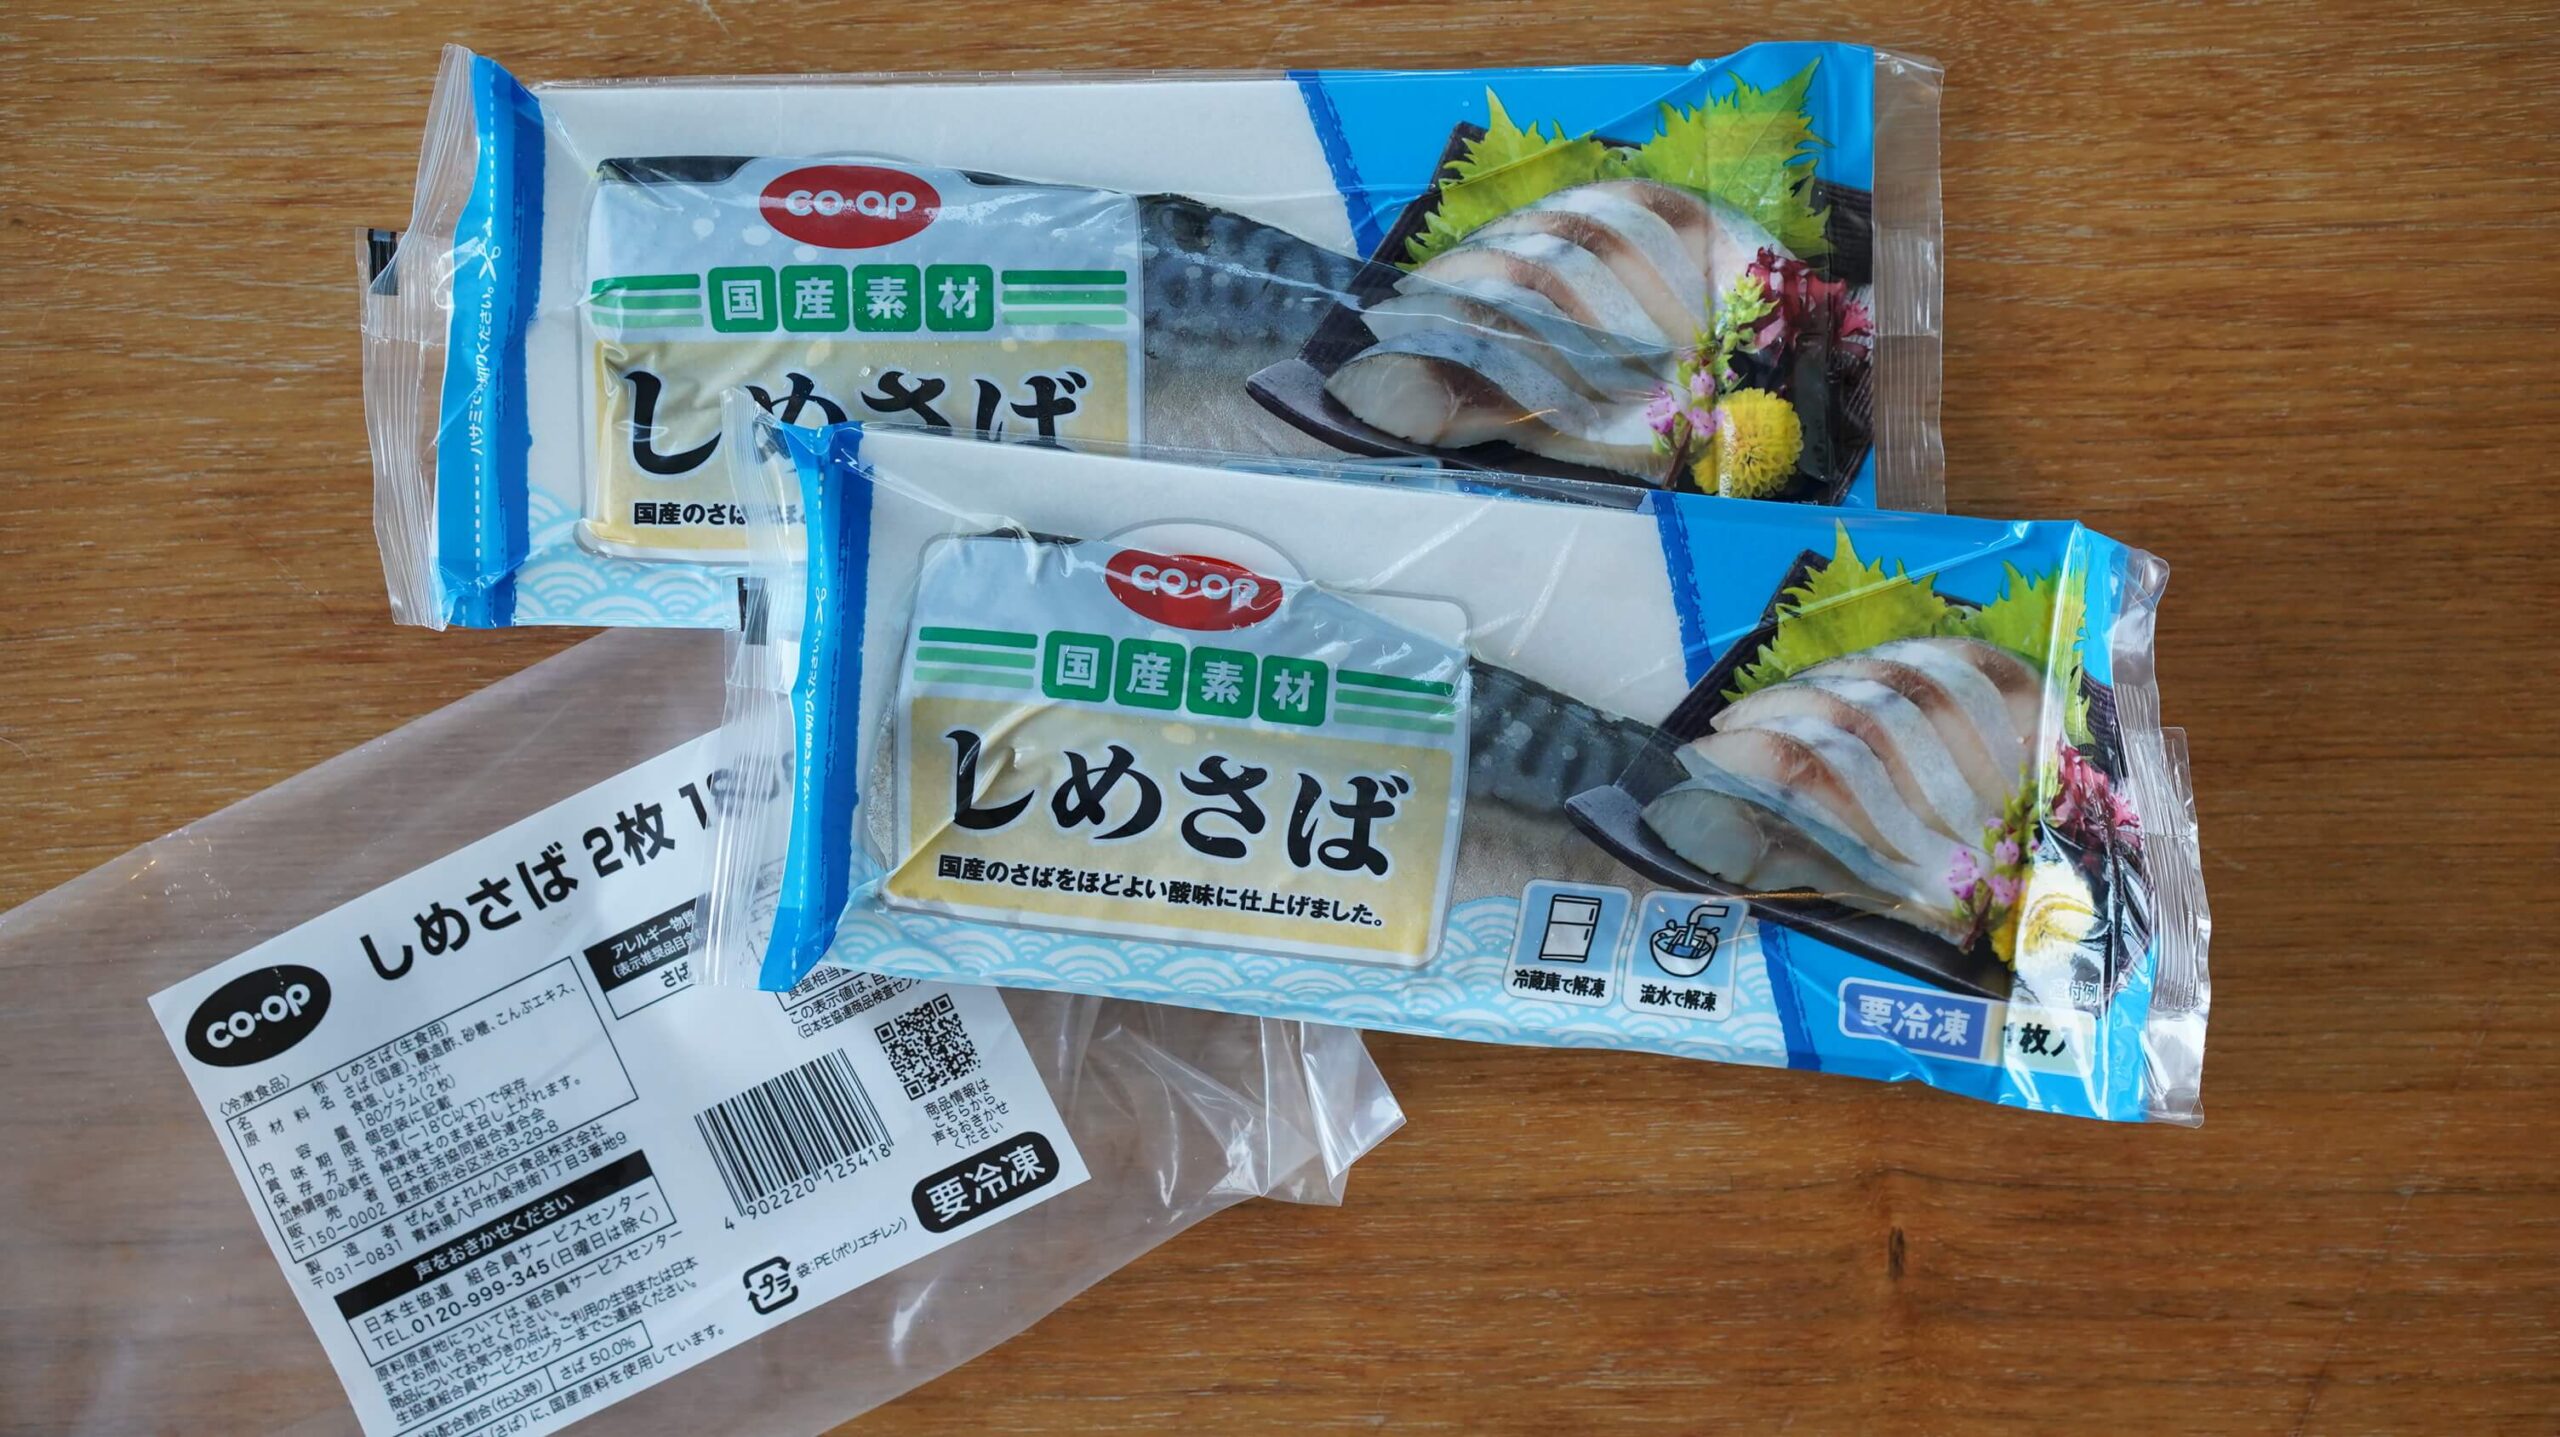 生協coop宅配の冷凍食品「しめさば」のパッケージ写真